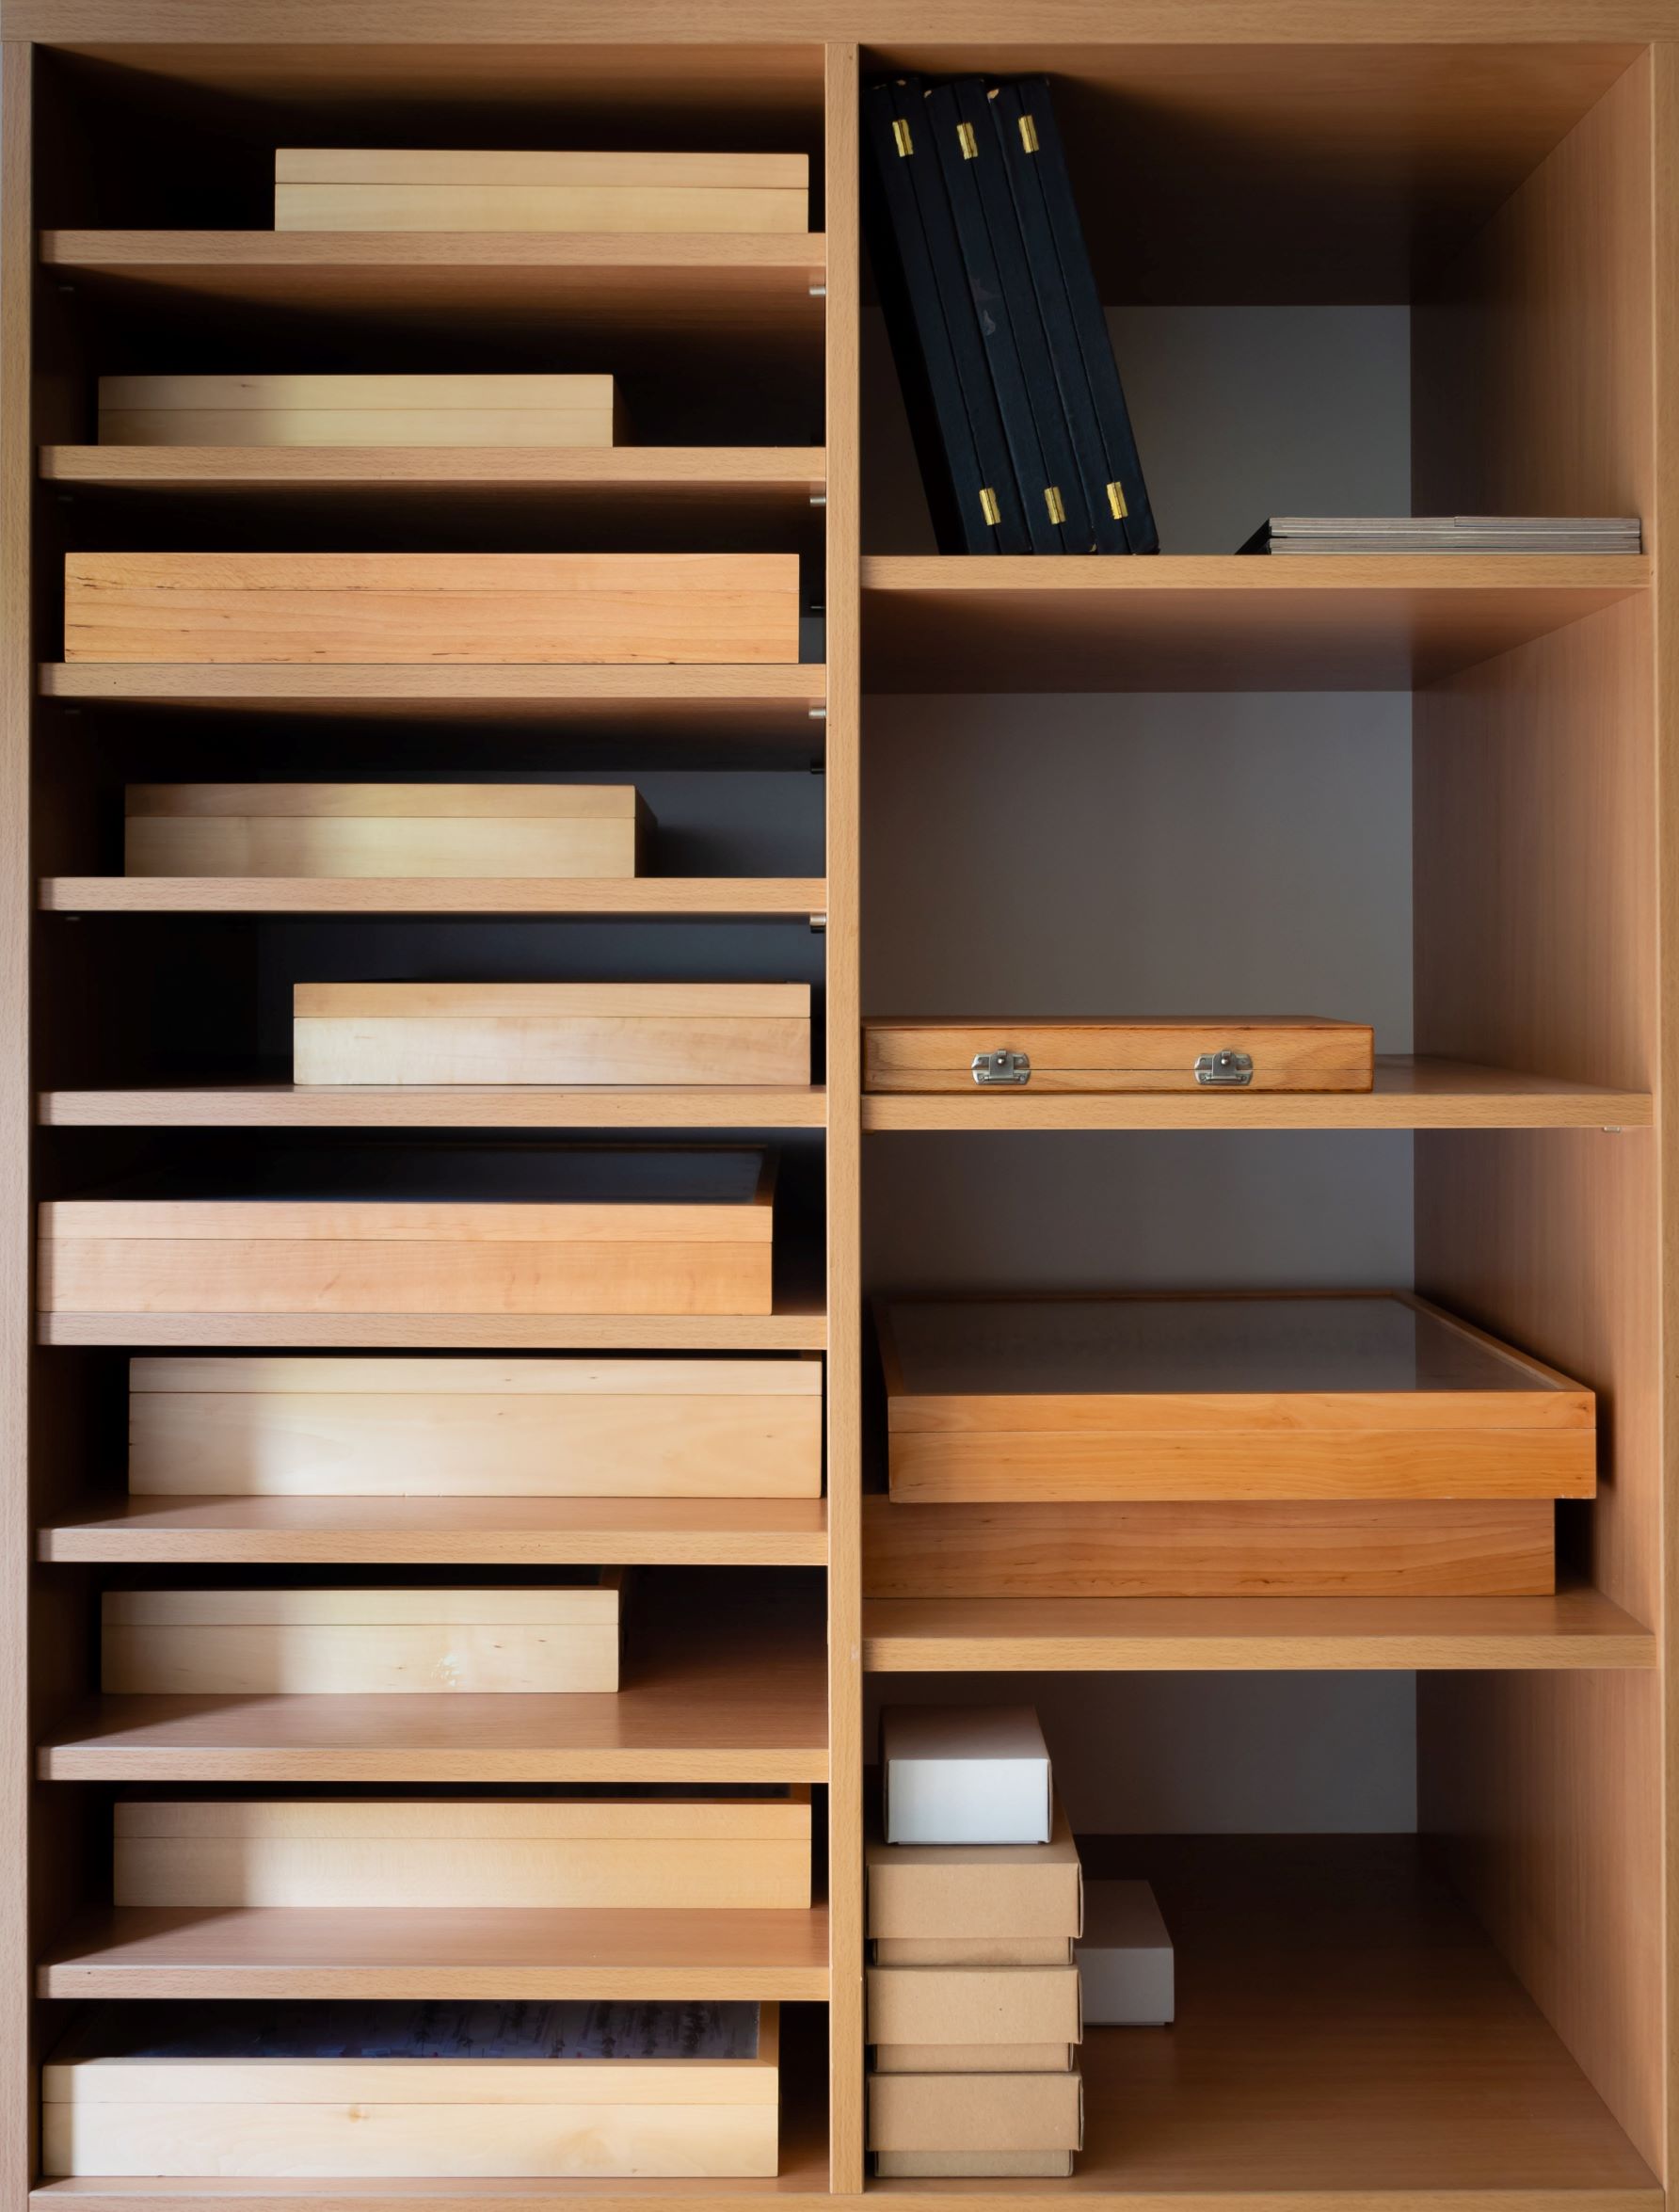 Organized Cabinet Wood shelves Resized 4mp